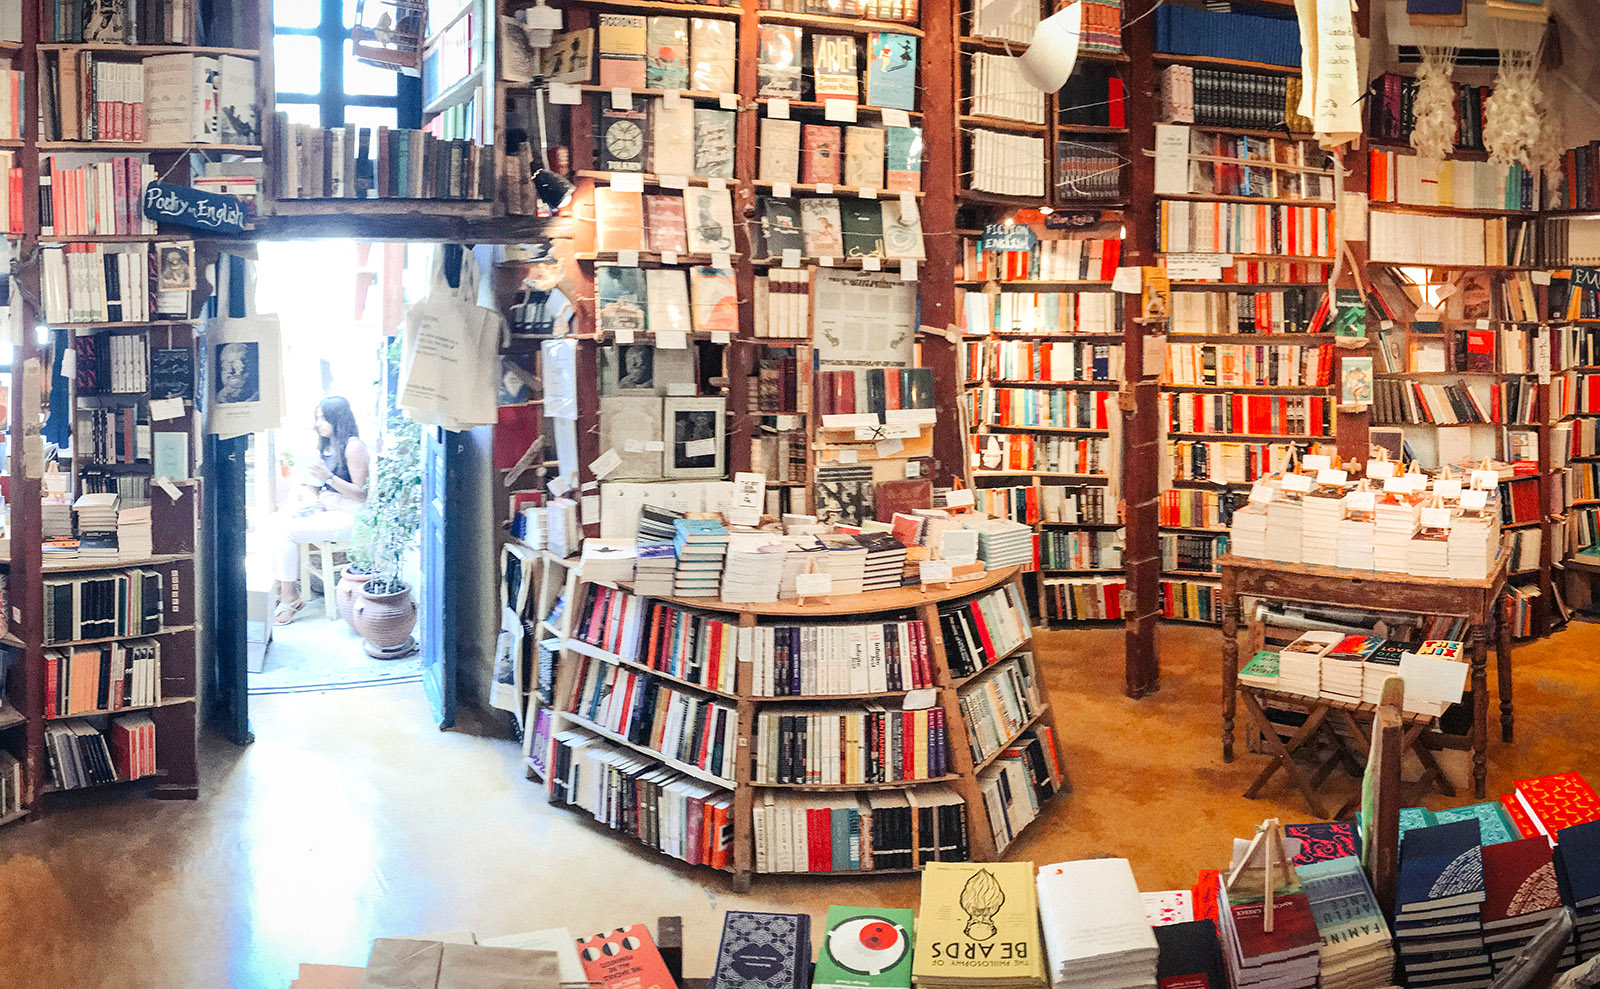 the bookshelves inside the shop